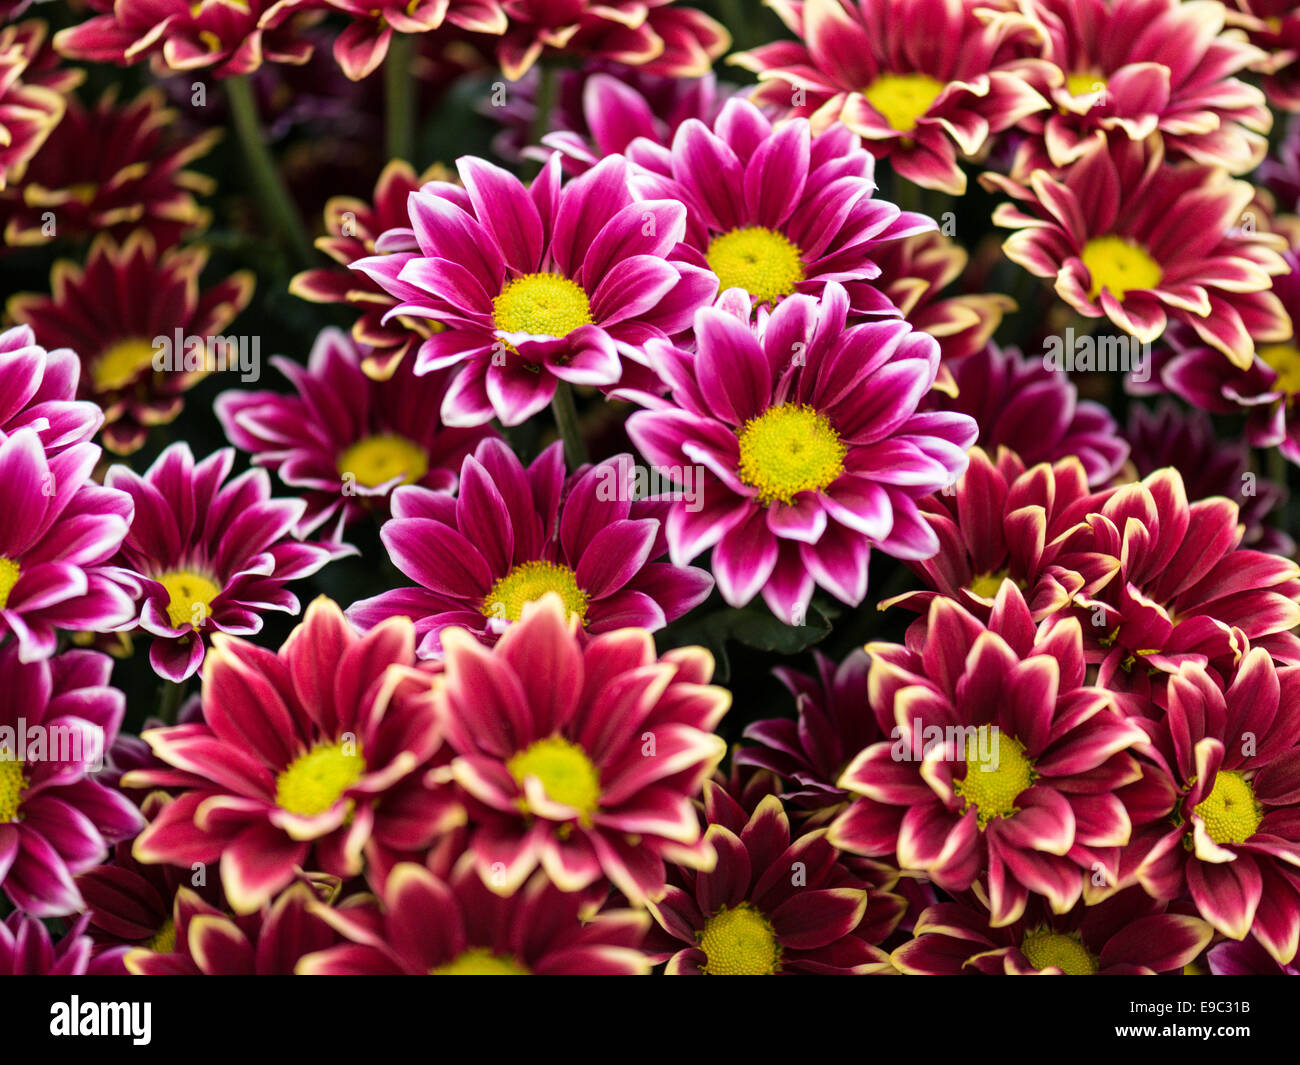 Superbe écran - Asteraceae rouge avec pétales blancs fringe et centre jaune. Banque D'Images